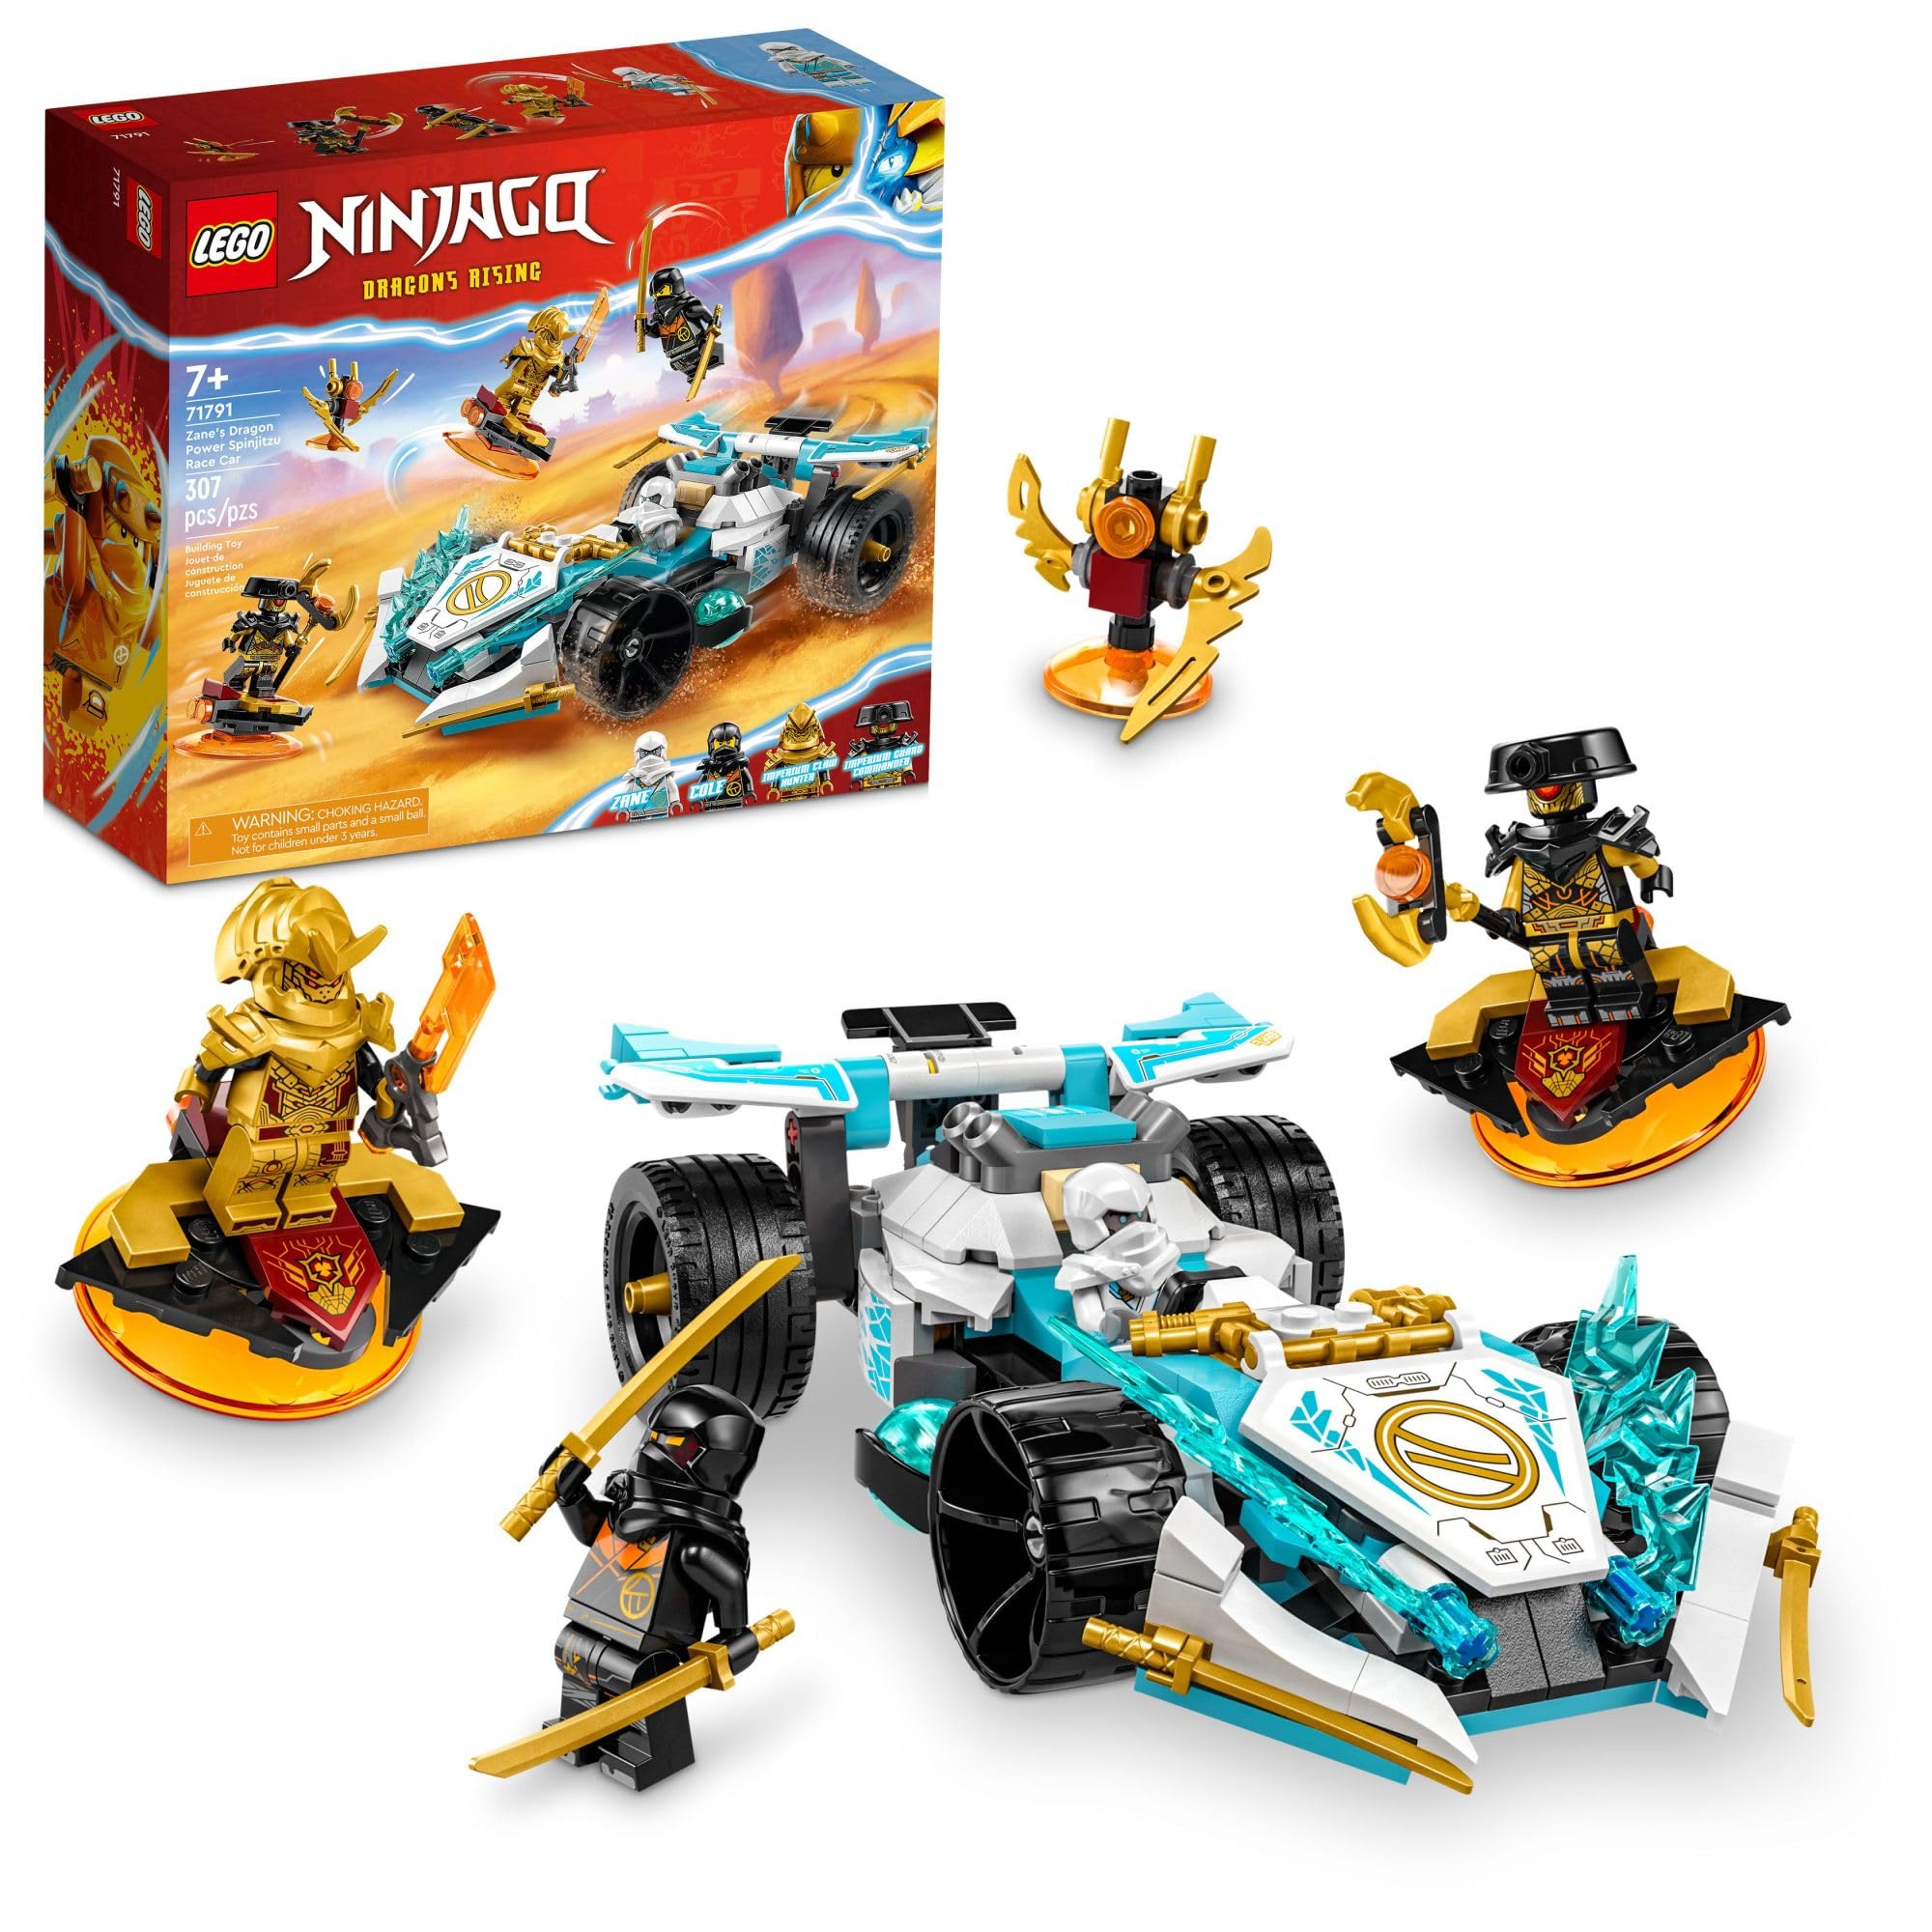 307-Piece LEGO NINJAGO Zane’s Dragon Power Spinjitzu Race Car (71791) $29 + Free Shipping w/ Prime or on $35+